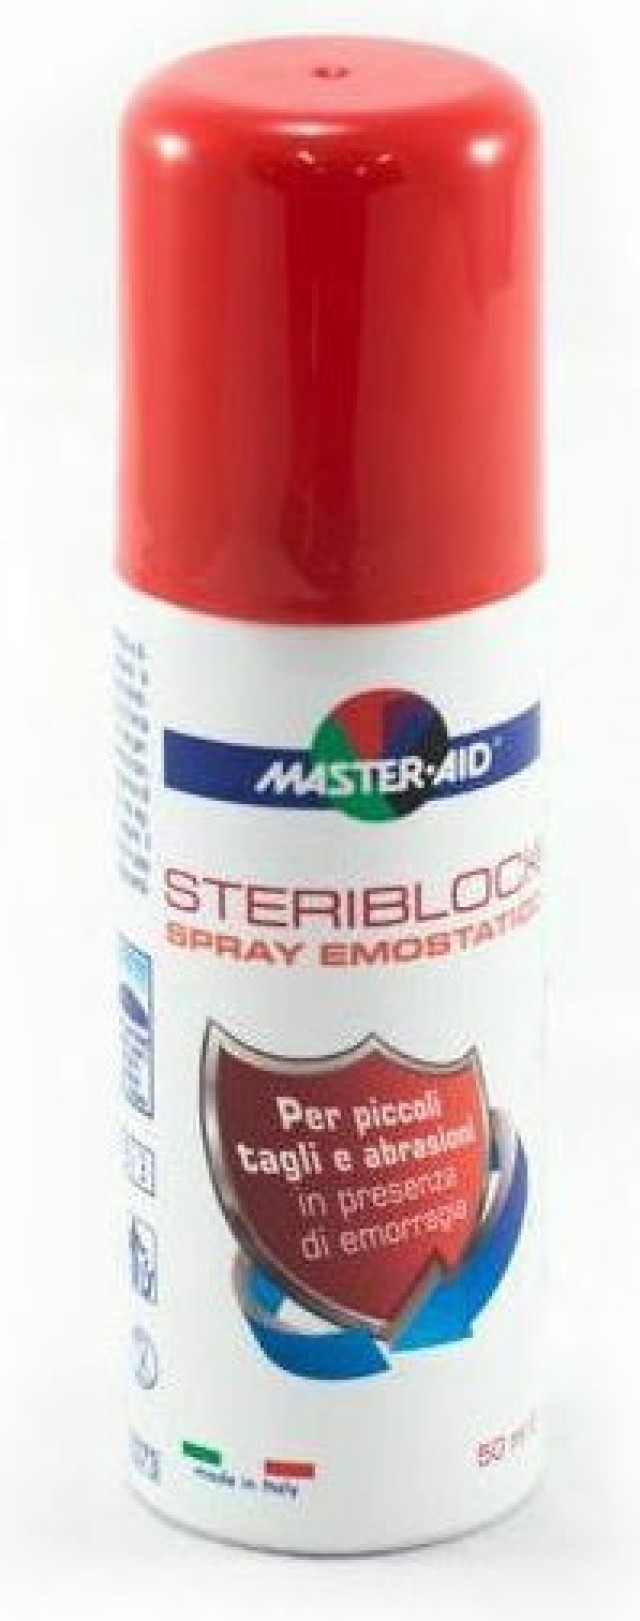 Master Aid Steriblock Spray Emostatico Αιμοστατικό Σπρέυ 50ml